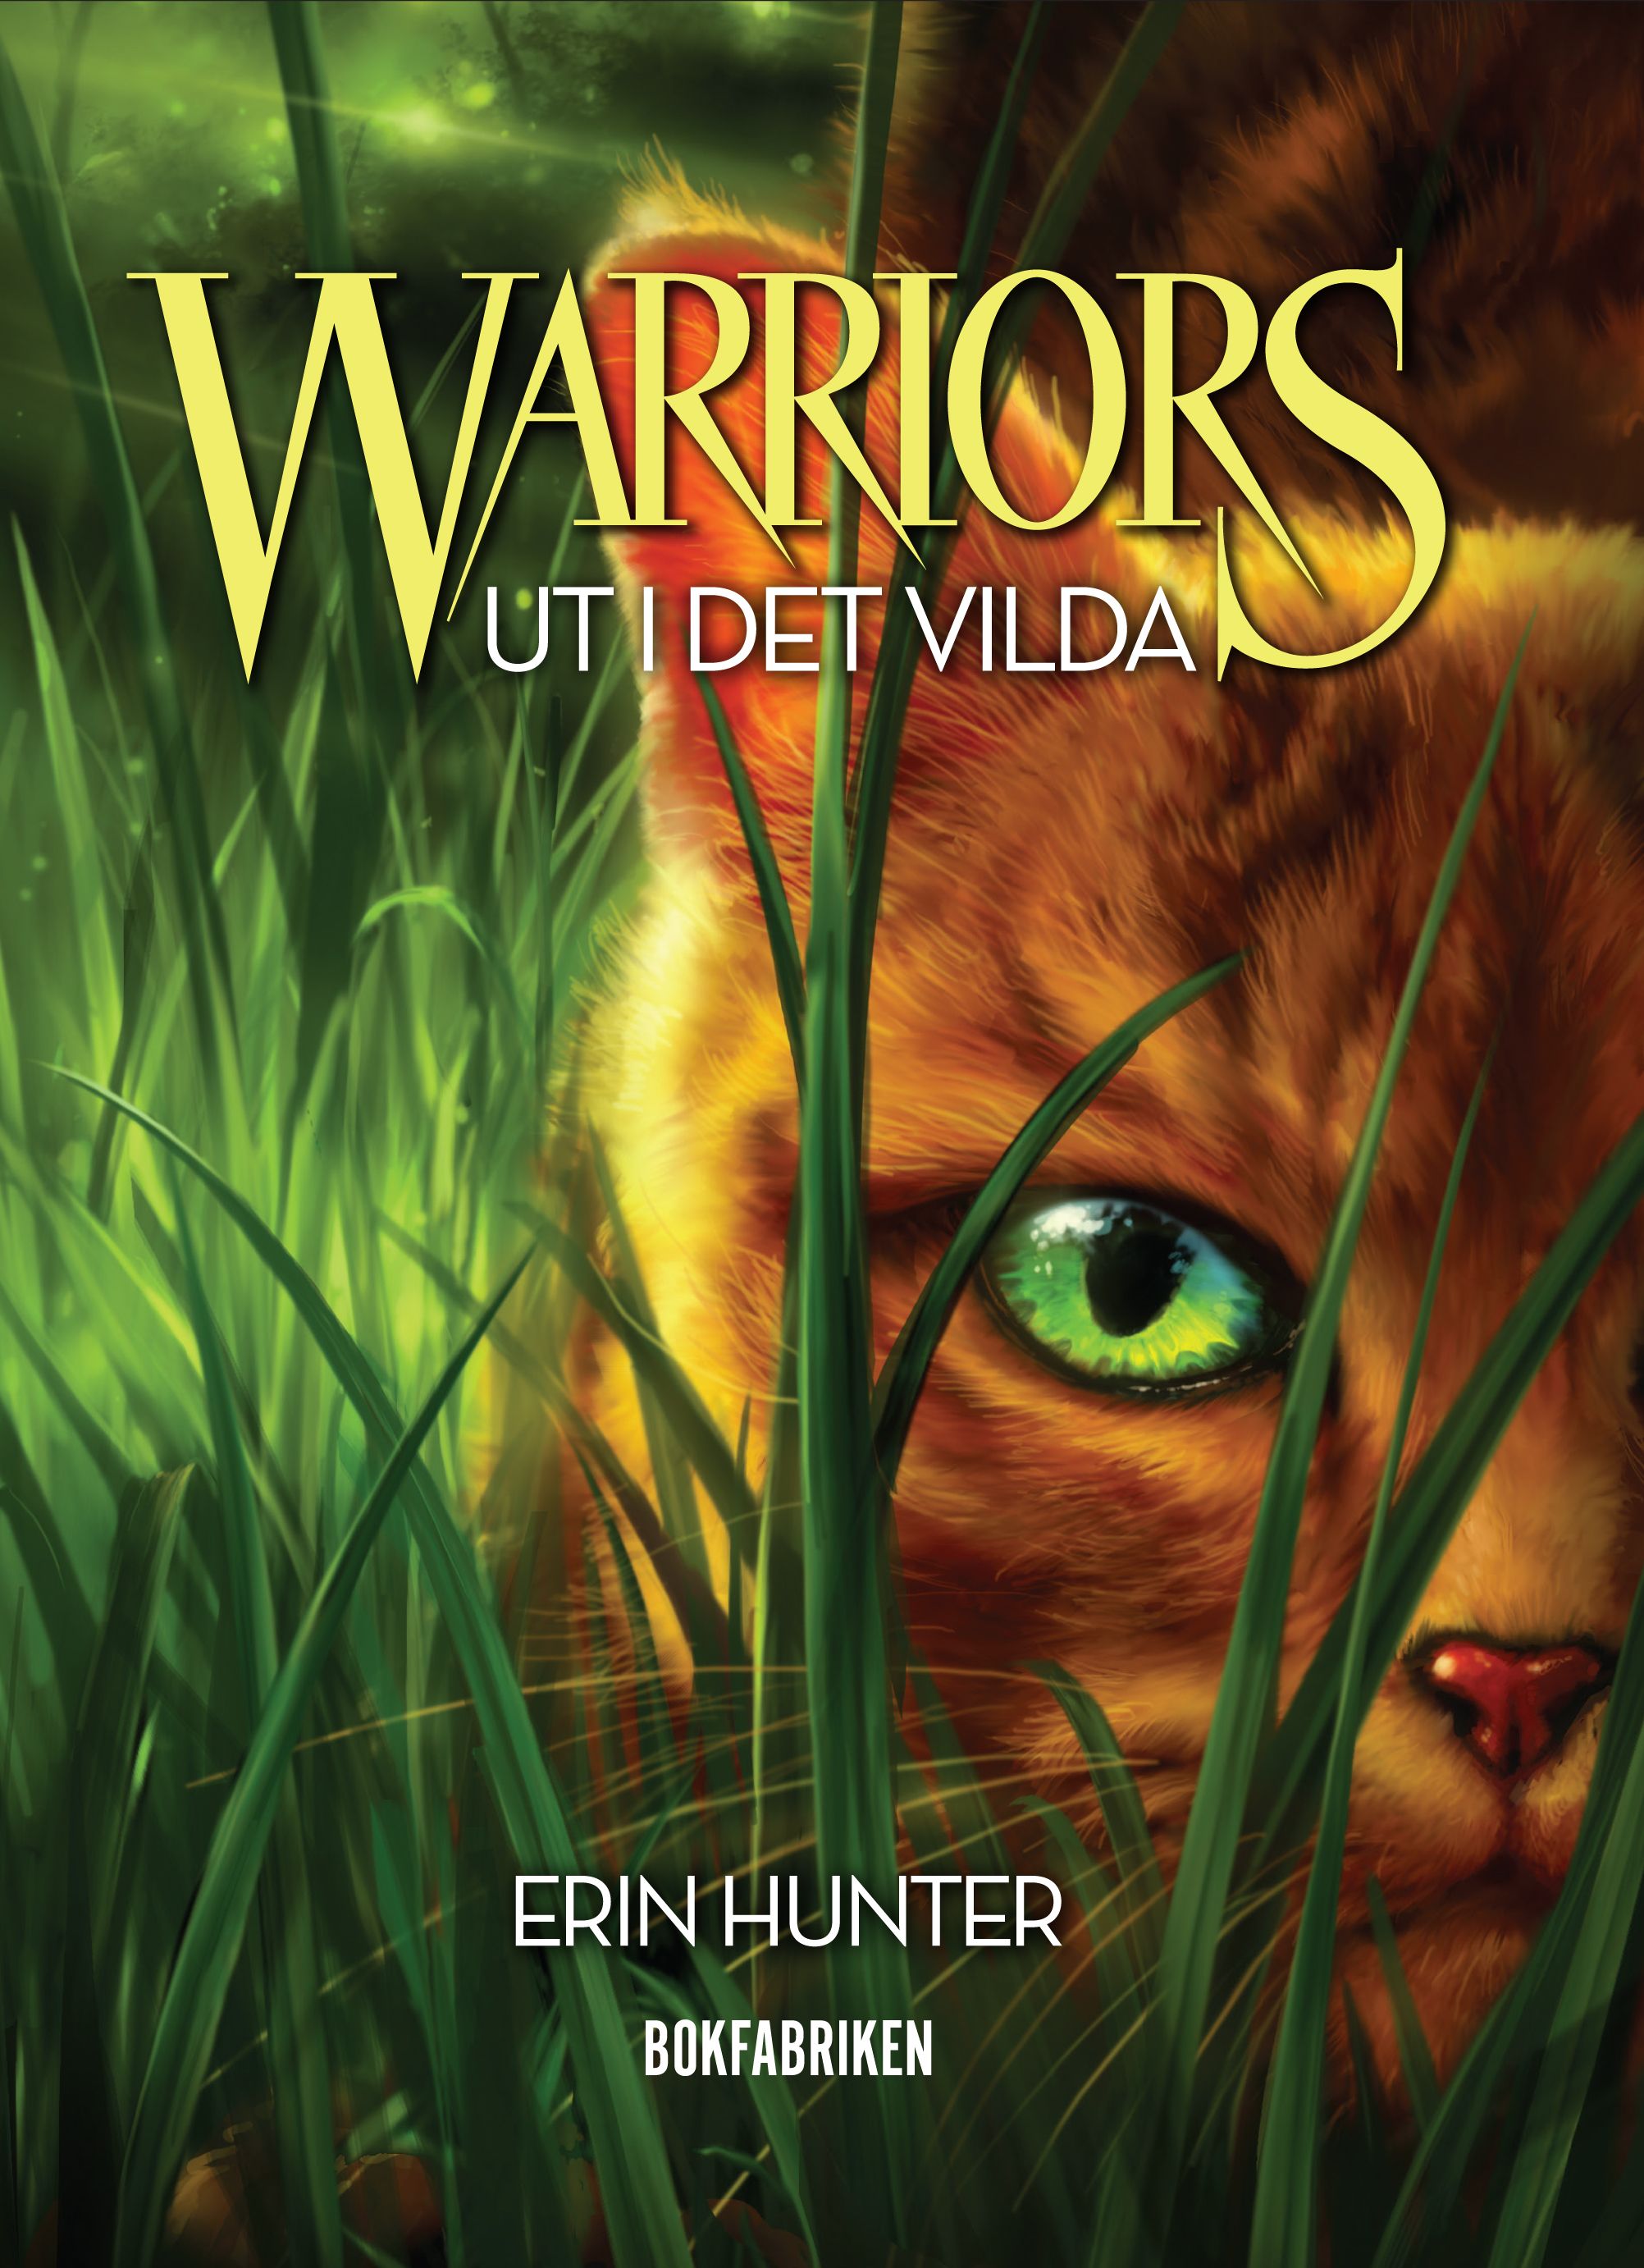 Warriors - Ut i det vilda, eBook by Erin Hunter